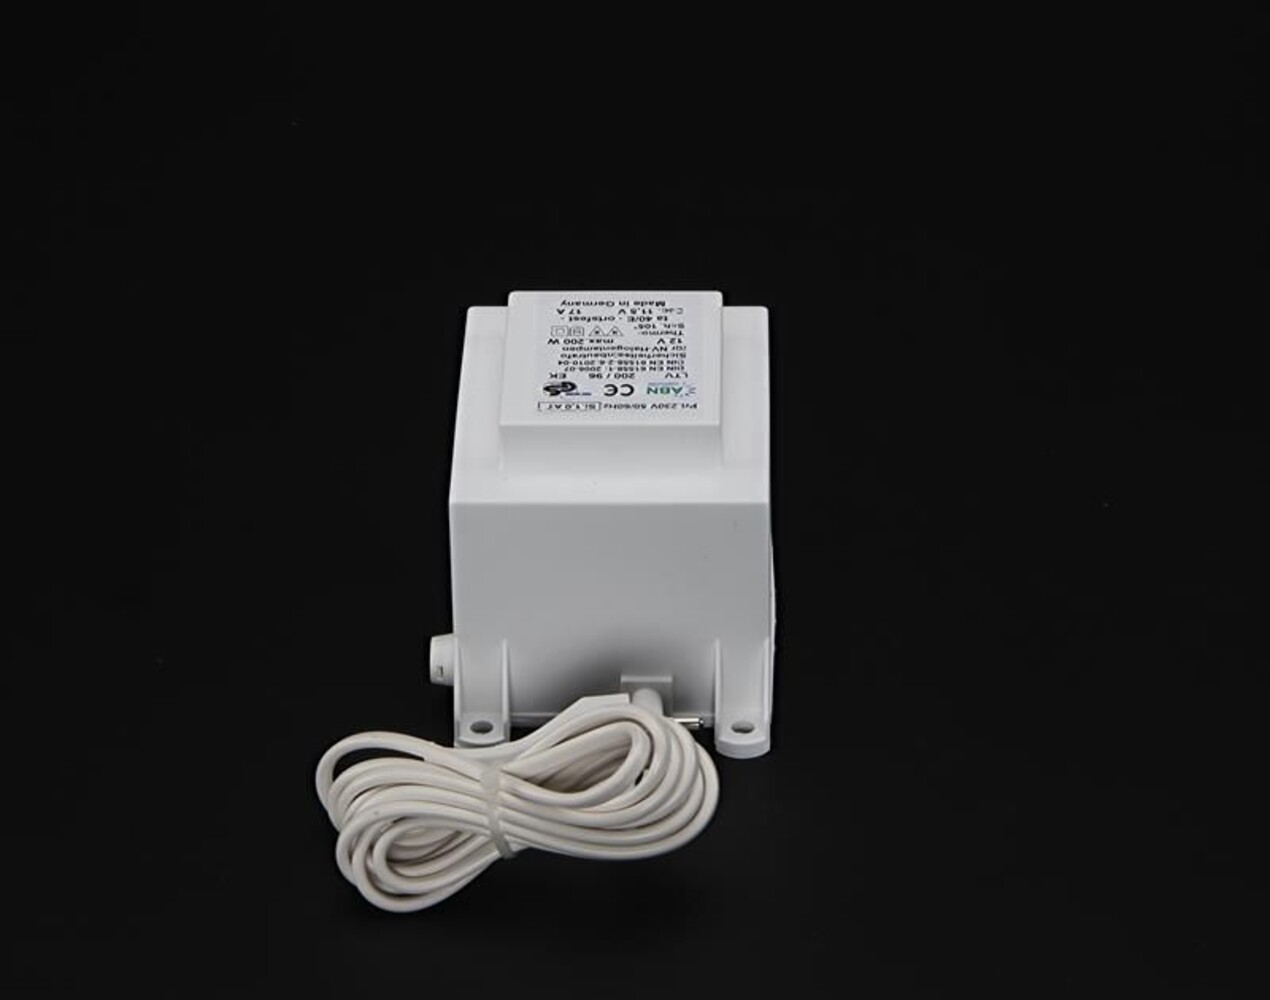 Hochwertiges LED Netzteil der Marke ABN, ideal für spannungskonstante und dimmbare Anwendungen.